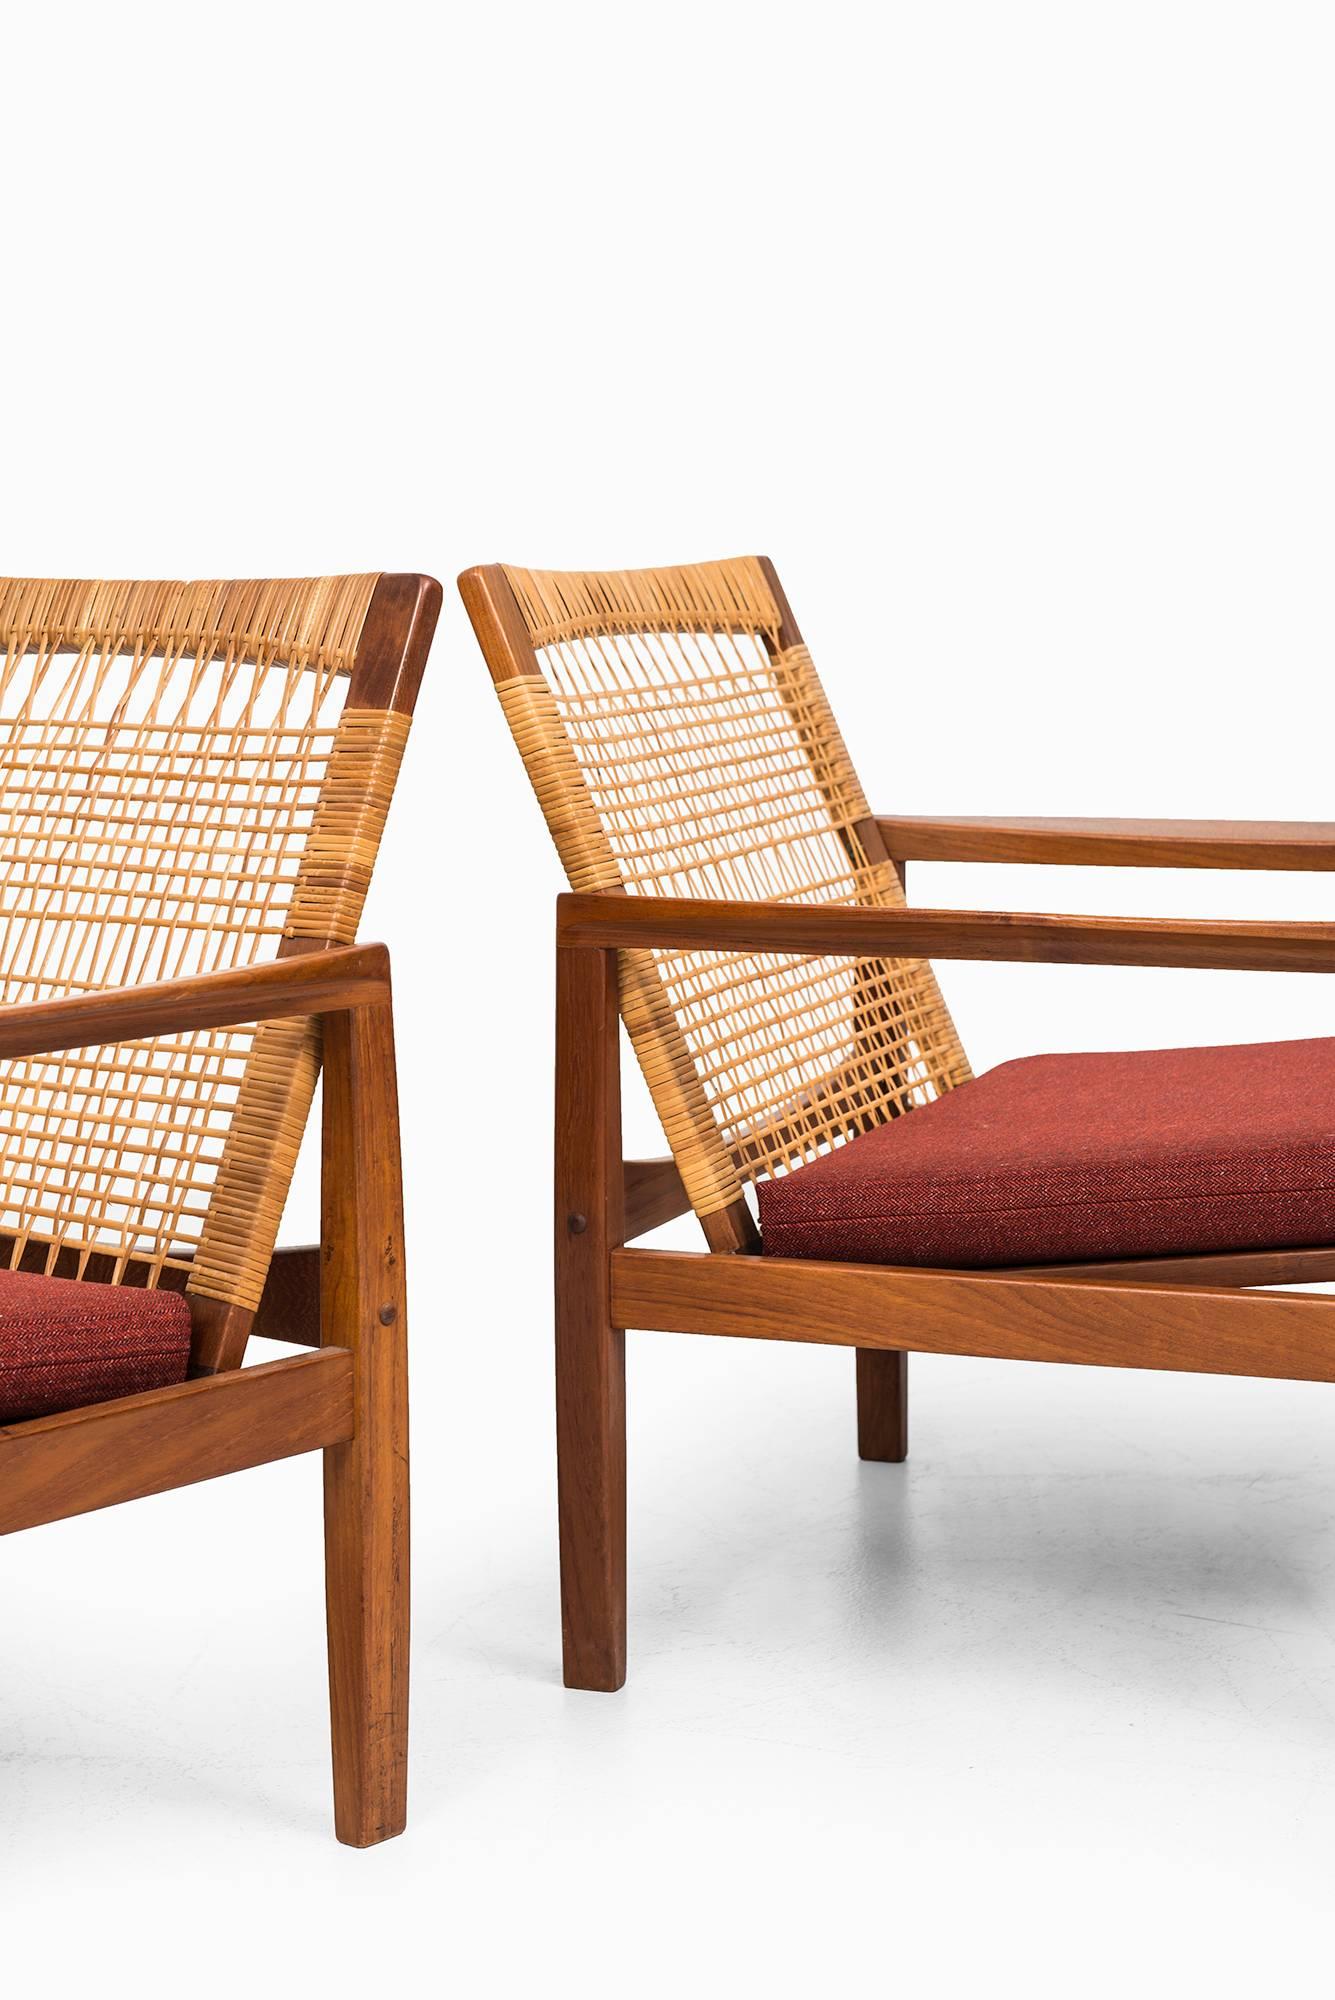 Hans Olsen Easy Chairs Modell 519 von Juul Kristensen in Dänemark (Gehstock)